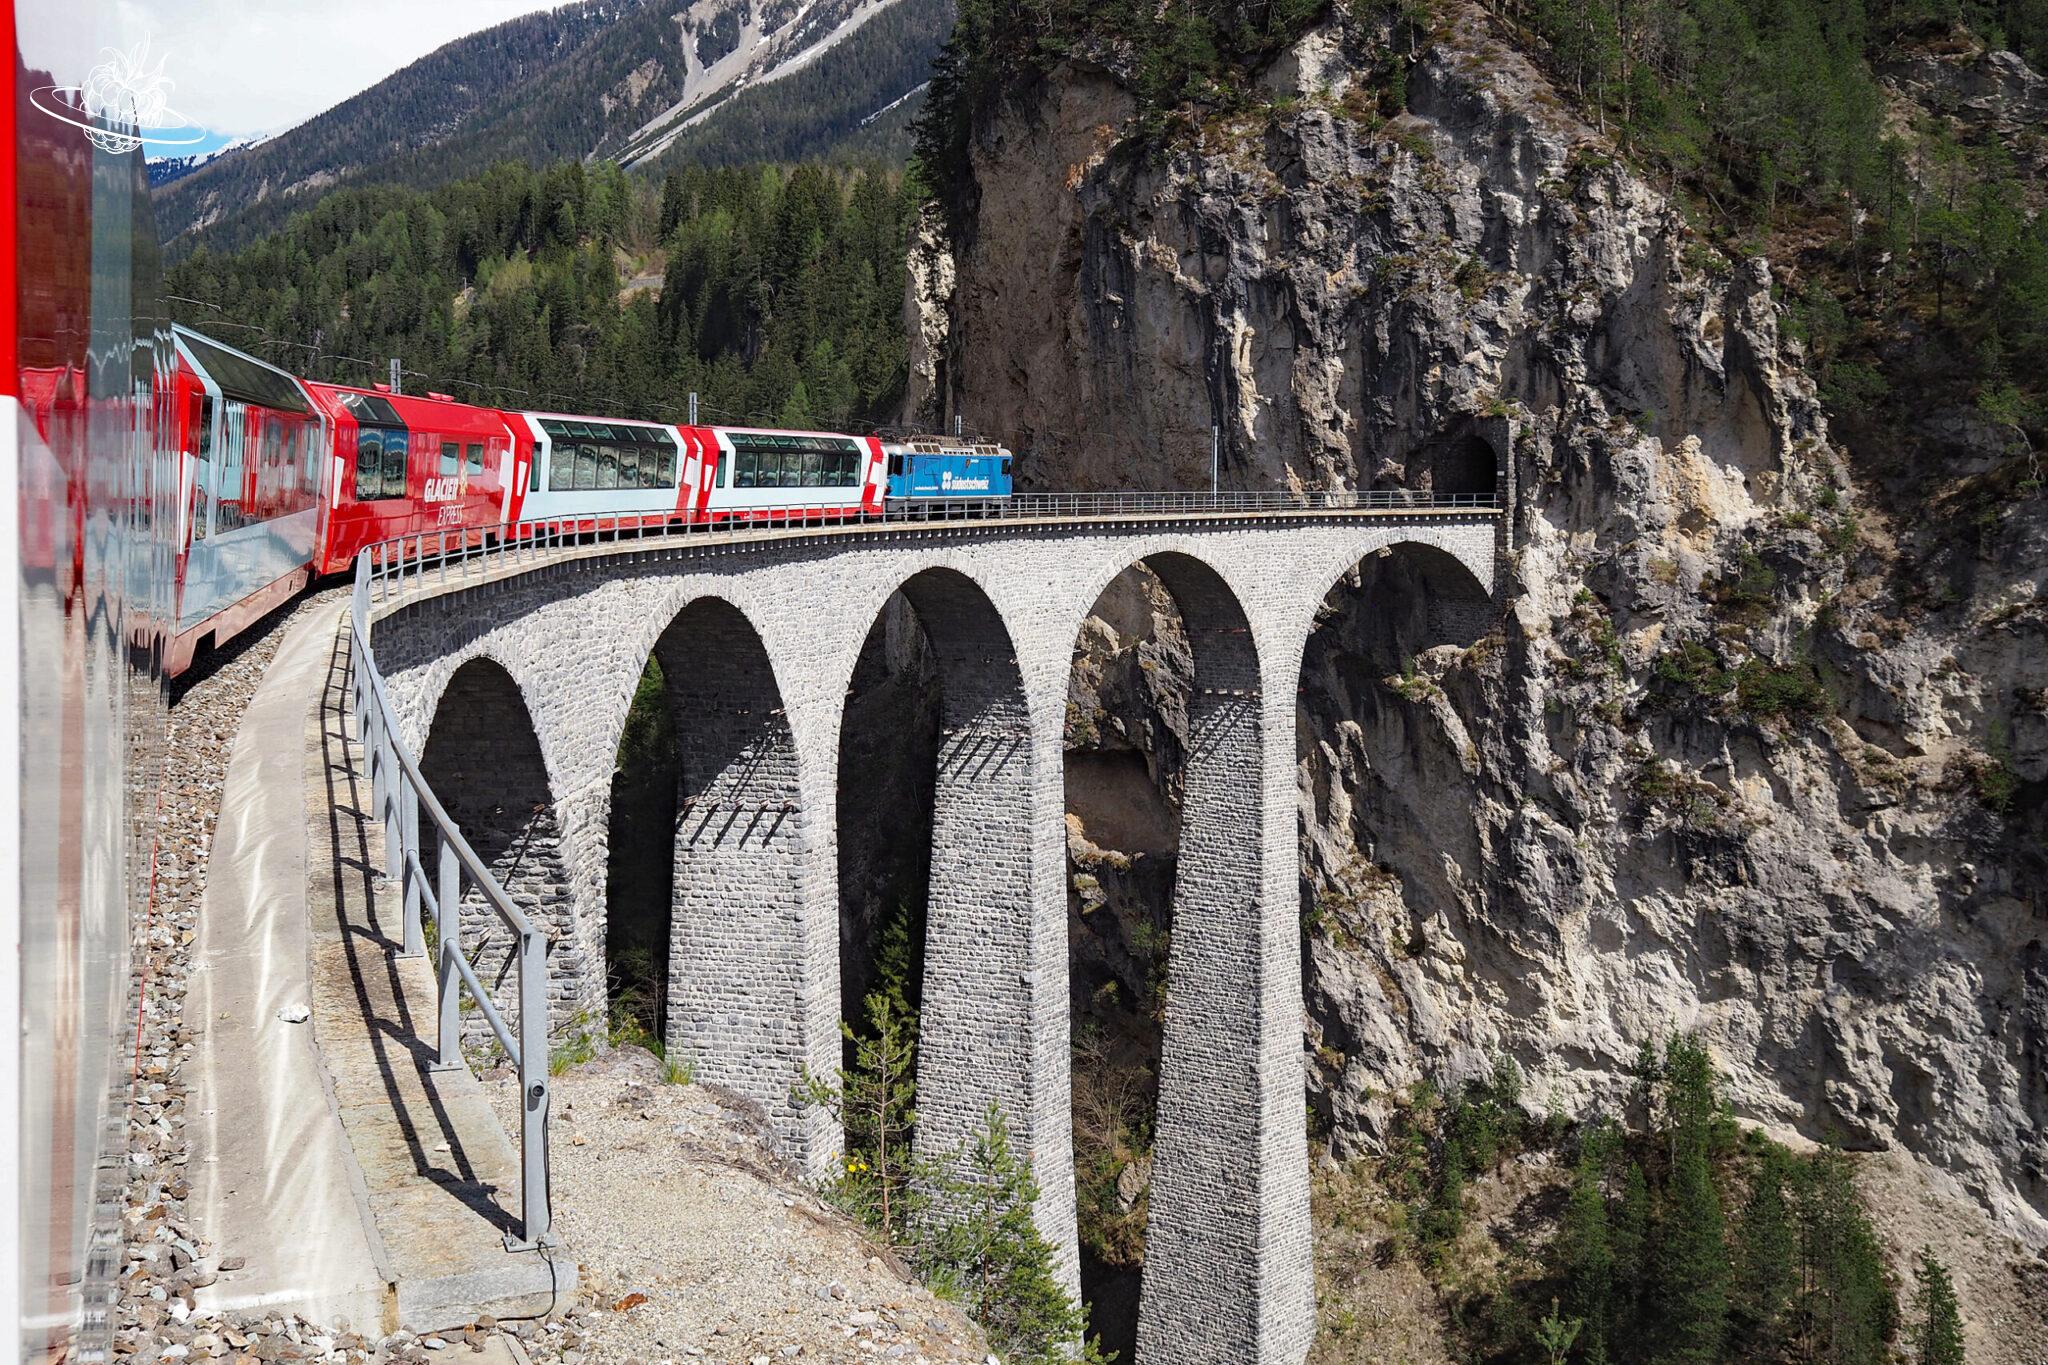 Luxus Zug Schweiz: Die Excellence Class im Glacier Express von Zermatt nach St. Moritz